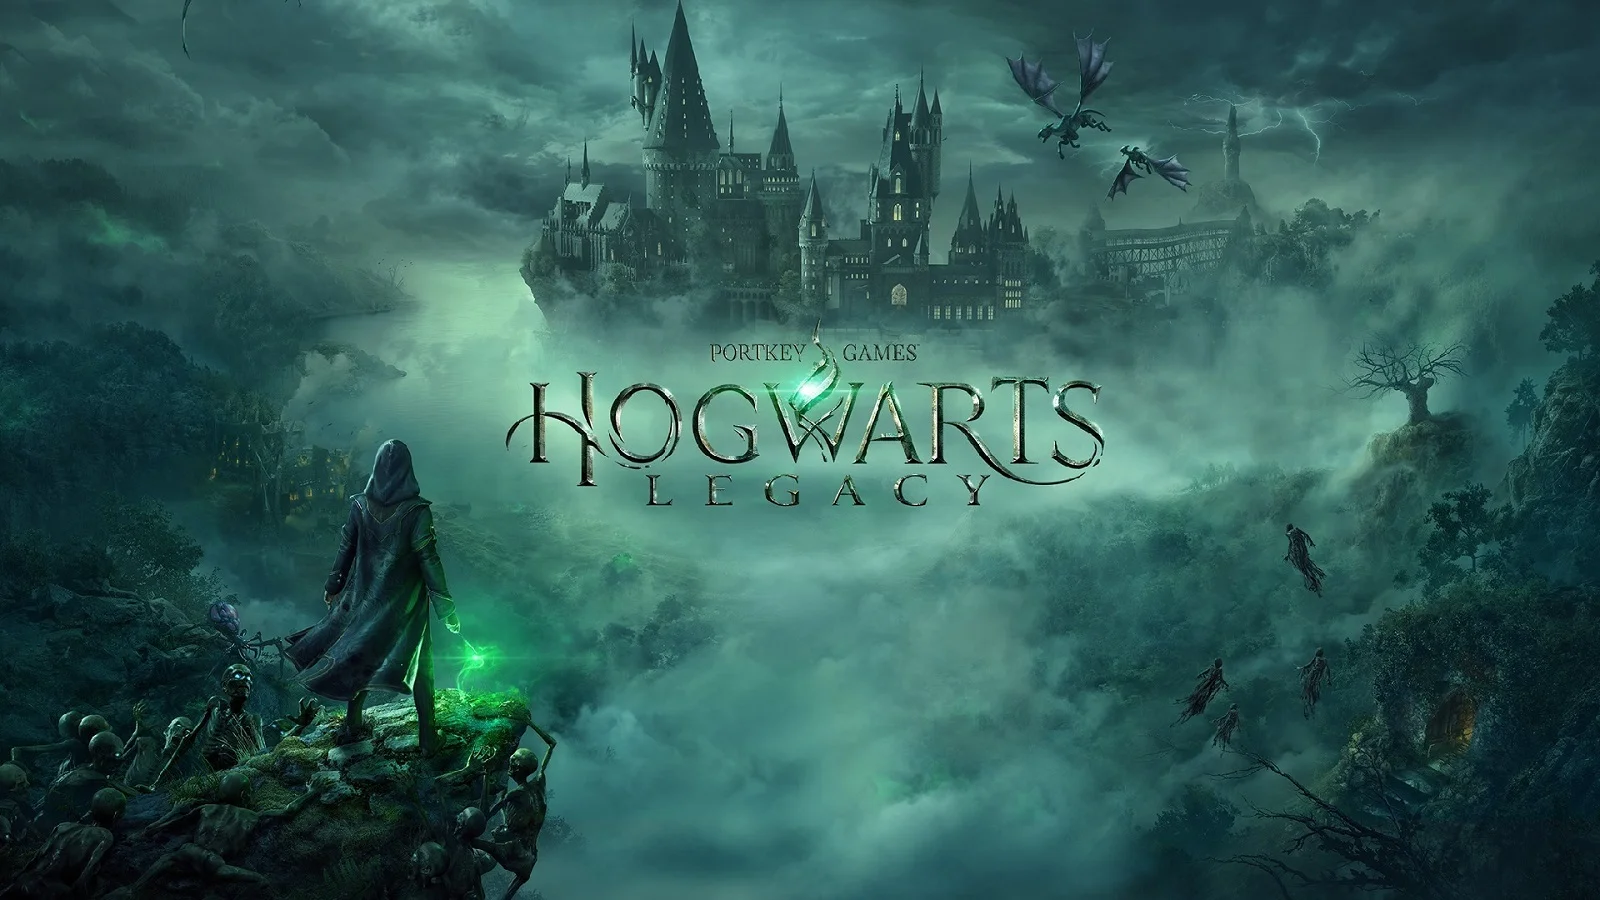 Hogwarts Legacy, PC-версия Returnal и новое DLC для Destiny 2: во что поиграть в феврале 2023 года - изображение 1